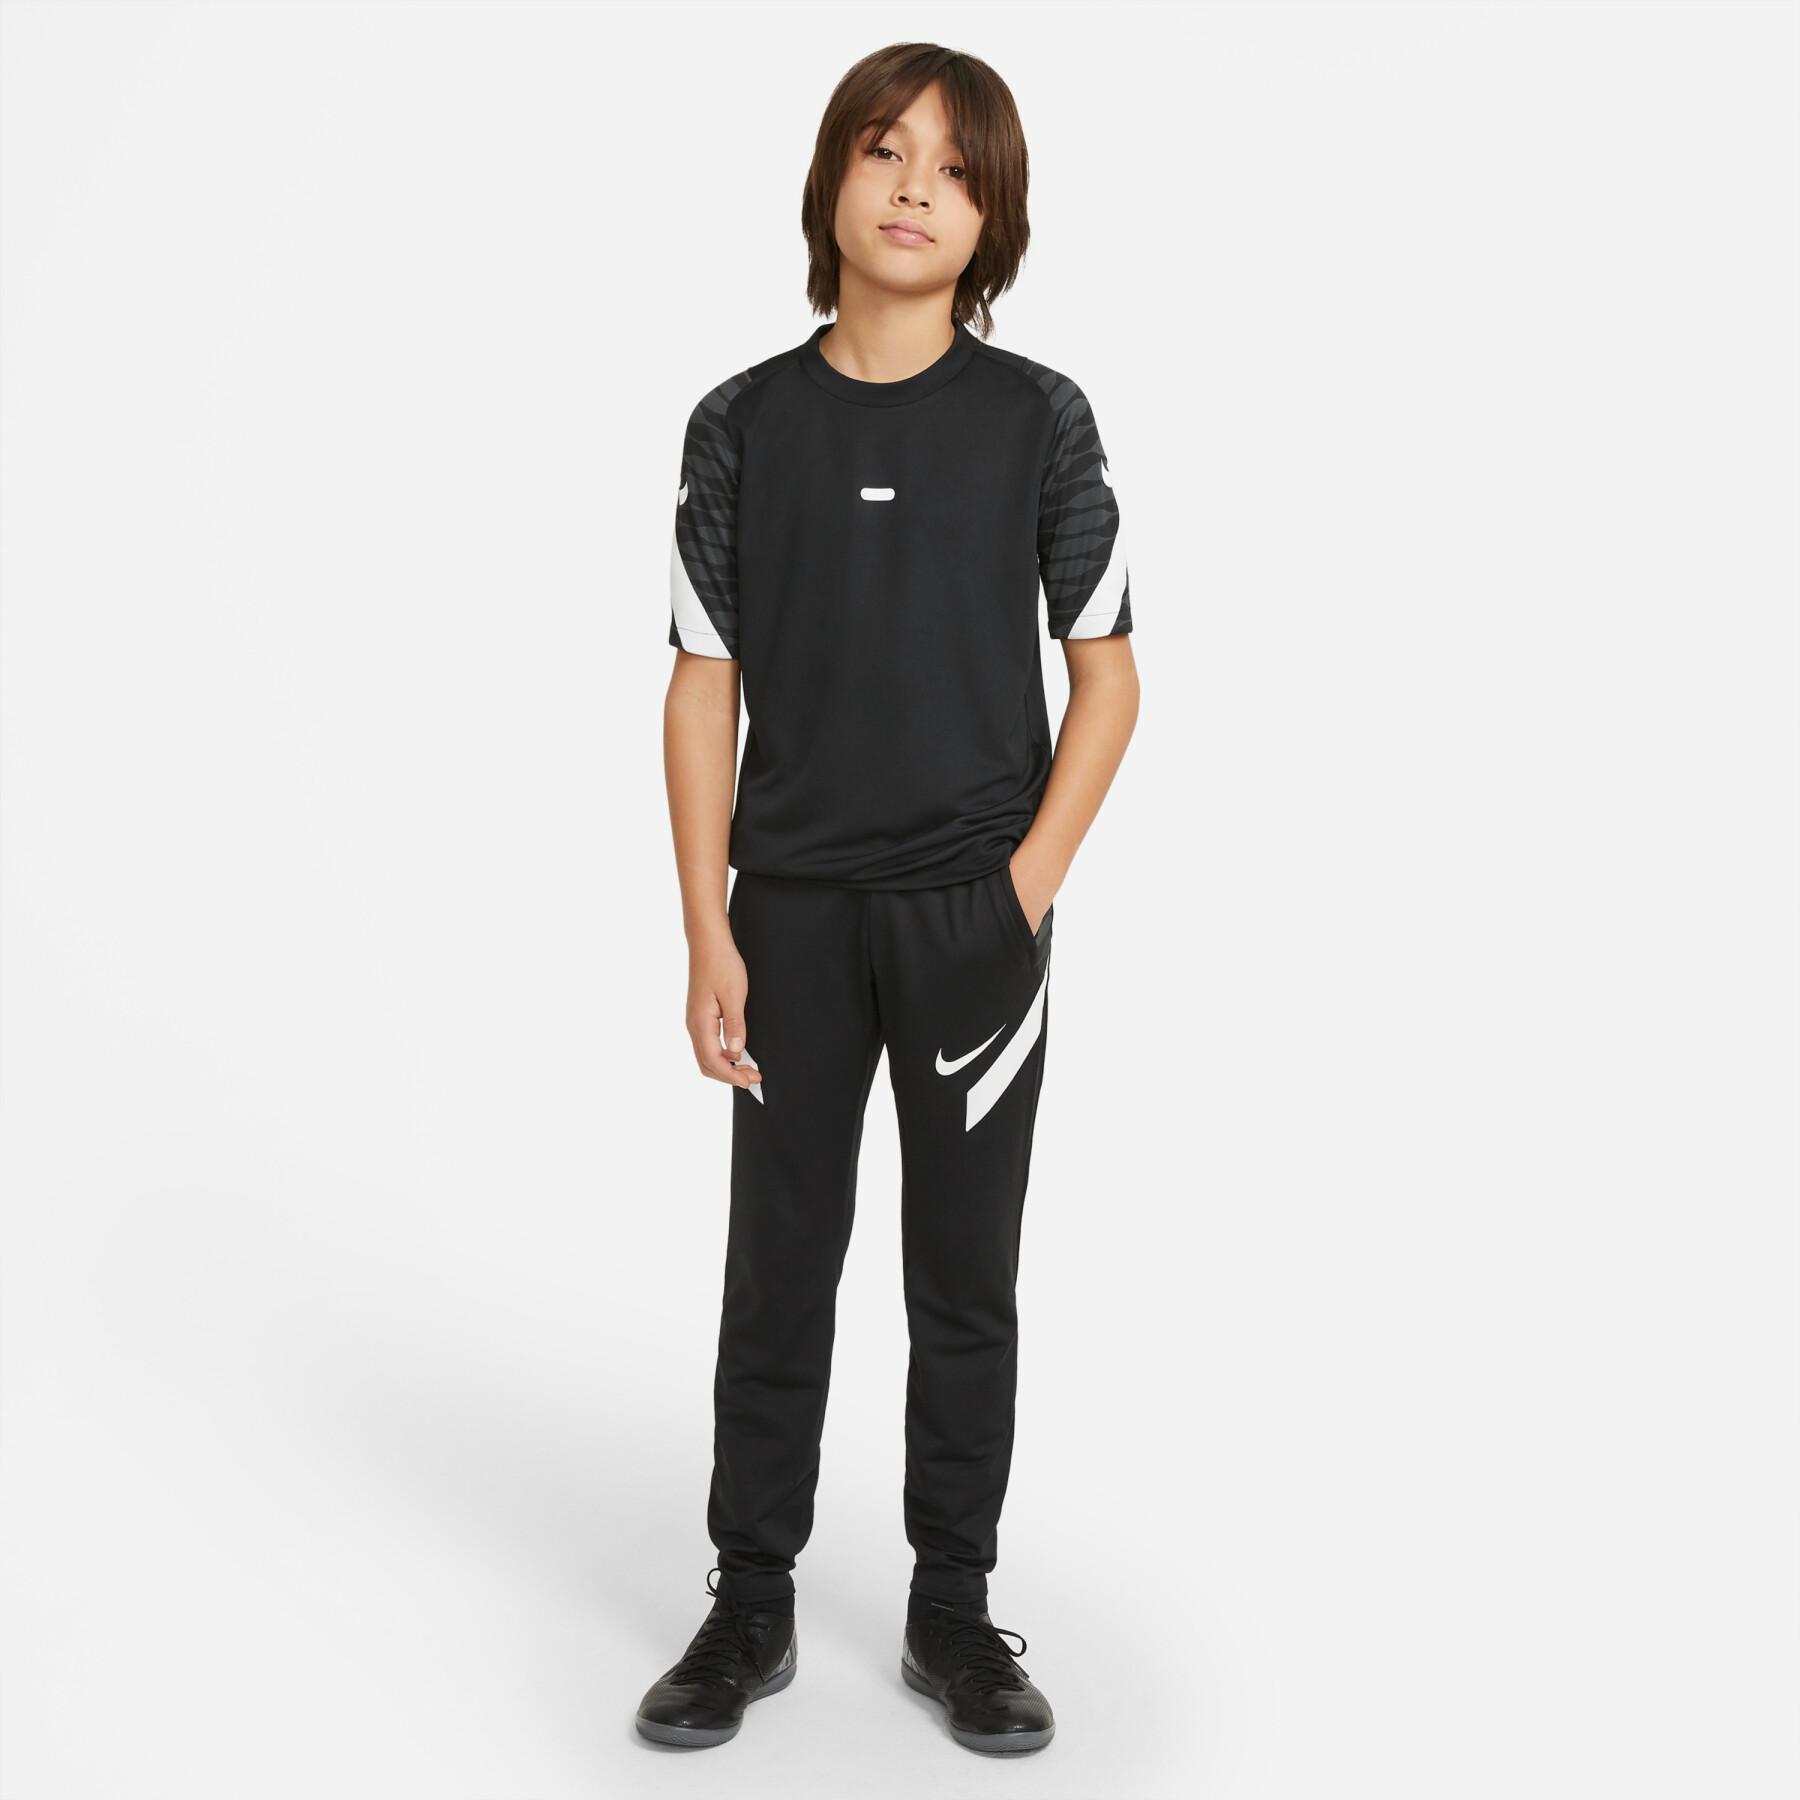 Spodnie dziecięce Nike Dynamic Fit StrikeE21